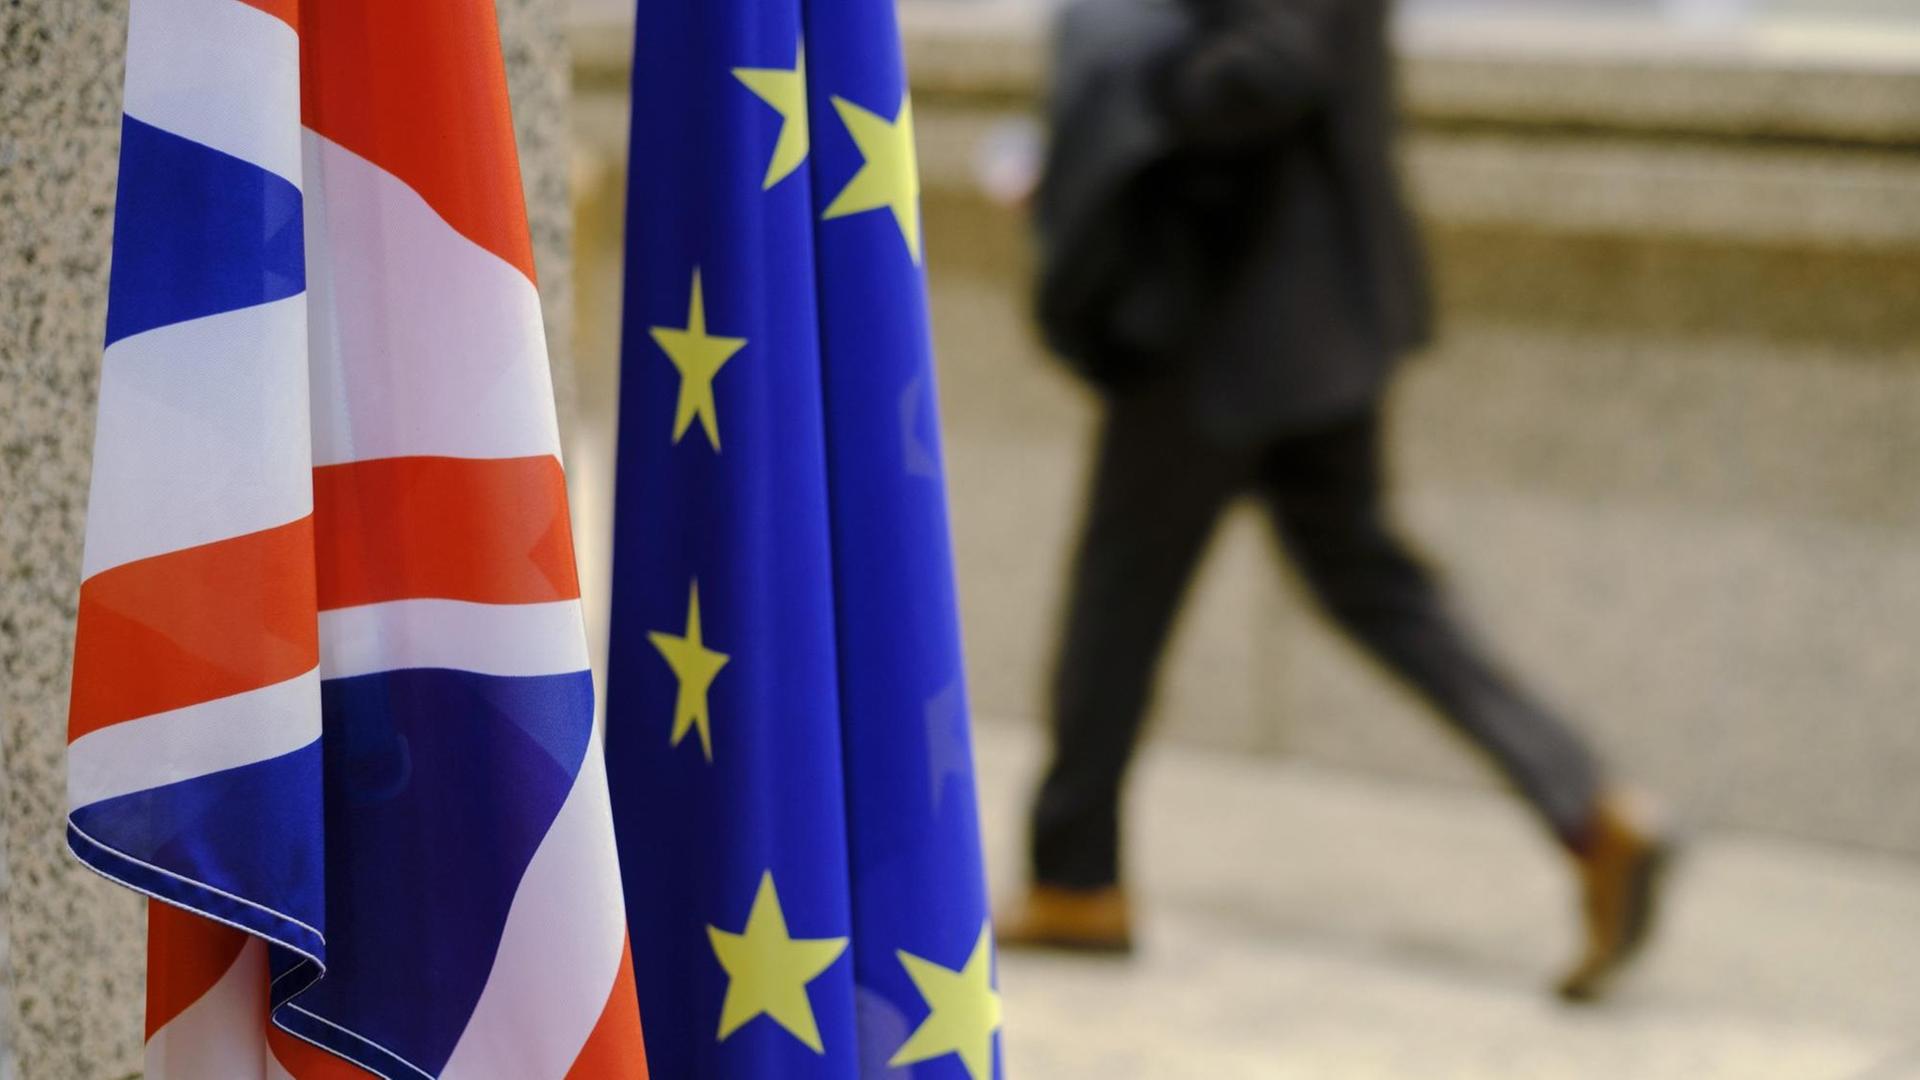 Die Fahnen Großbritanniens und der EU nebeneinander im Vordergrund, im Hintergrund ein laufender Mensch auf der Straße